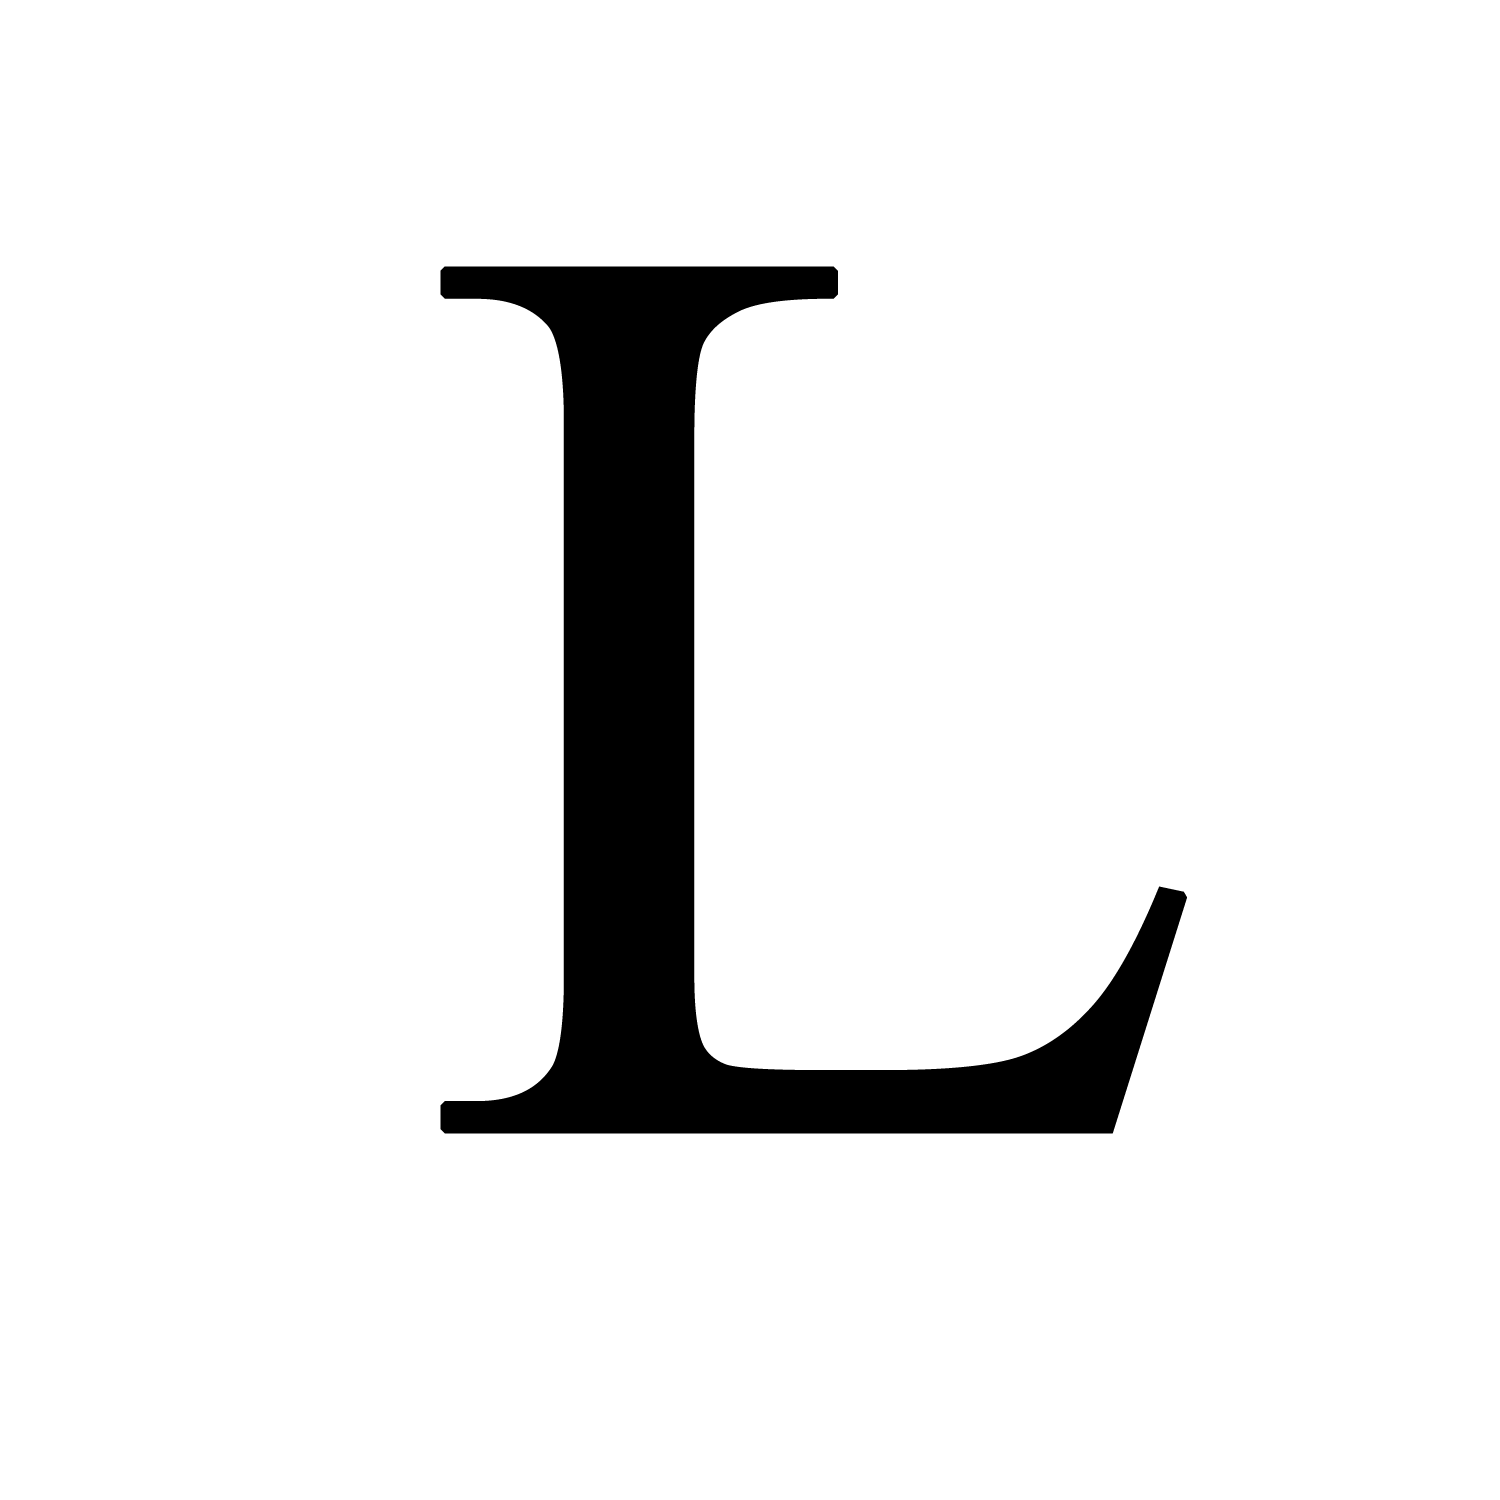 Balenciaga Logo and symbol, meaning, history, sign.